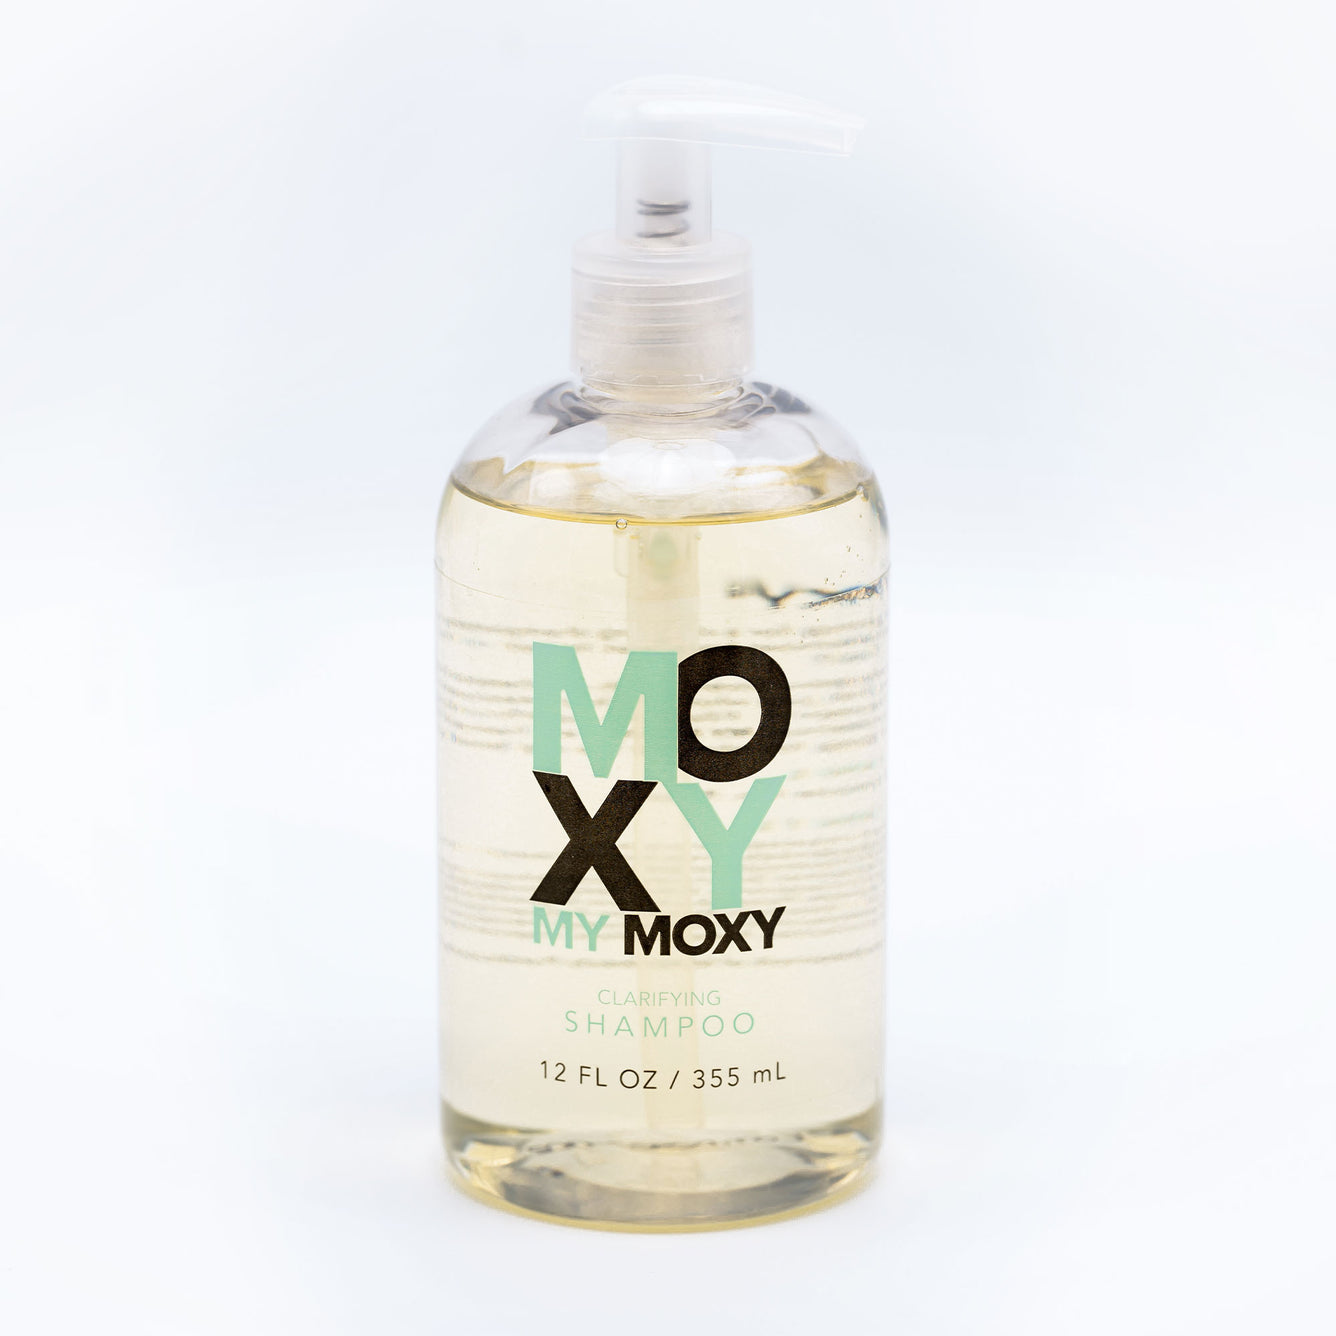 My Moxy Clarifying Shampoo - 12 Ounces